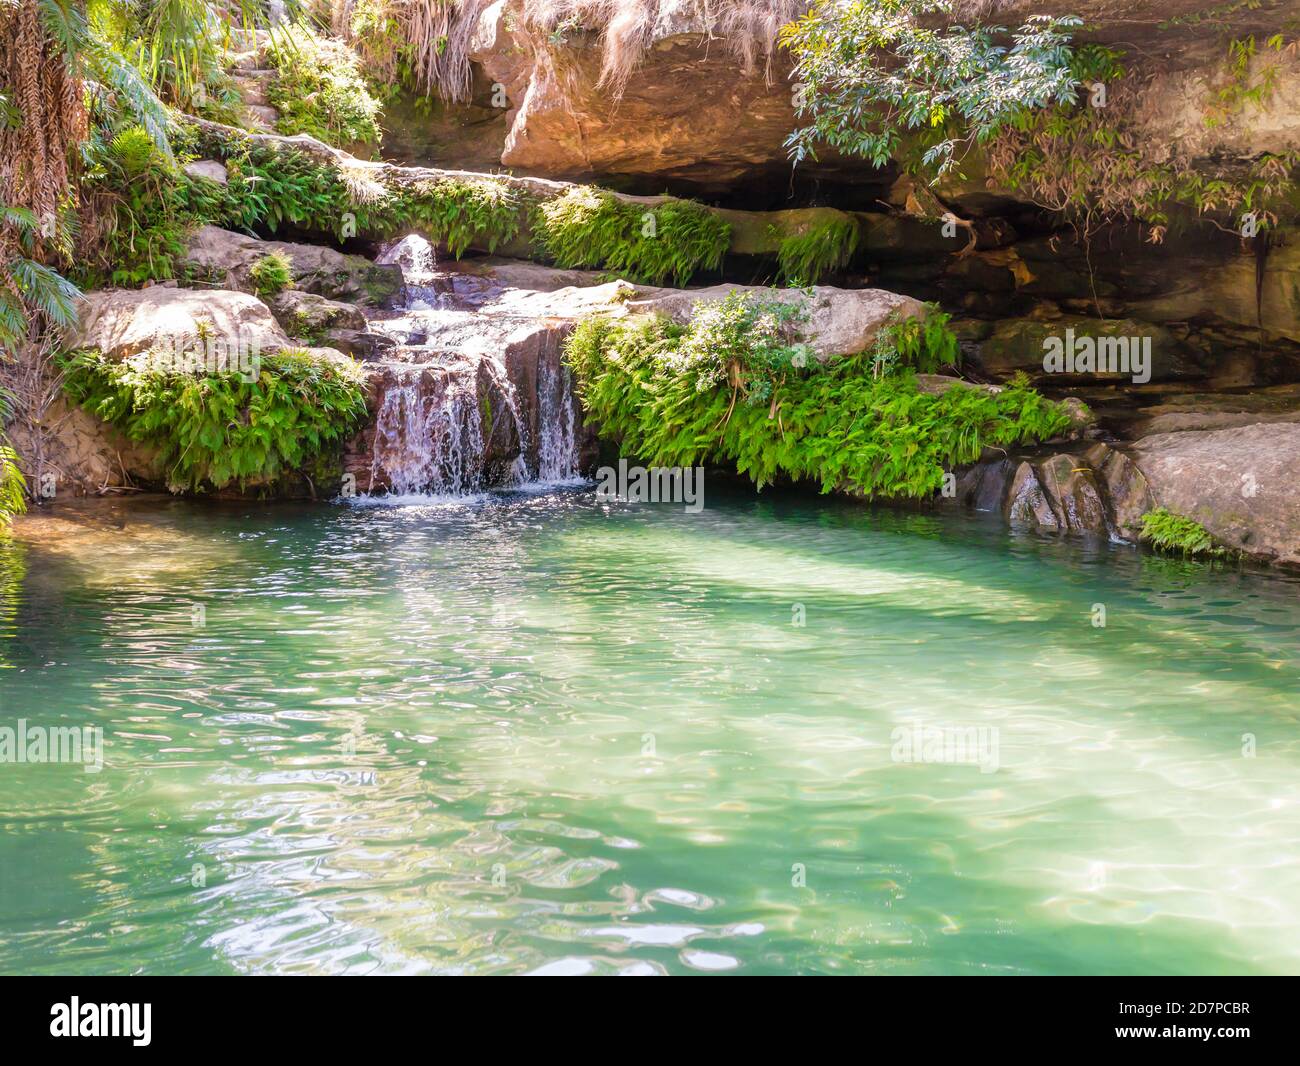 Impresionante oasis llamado 'la piscine naturelle', una piscina rodeada de palmeras, alimentada constantemente por una cascada cristalina, el Parque Nacional de Isalo, Madagascar Foto de stock